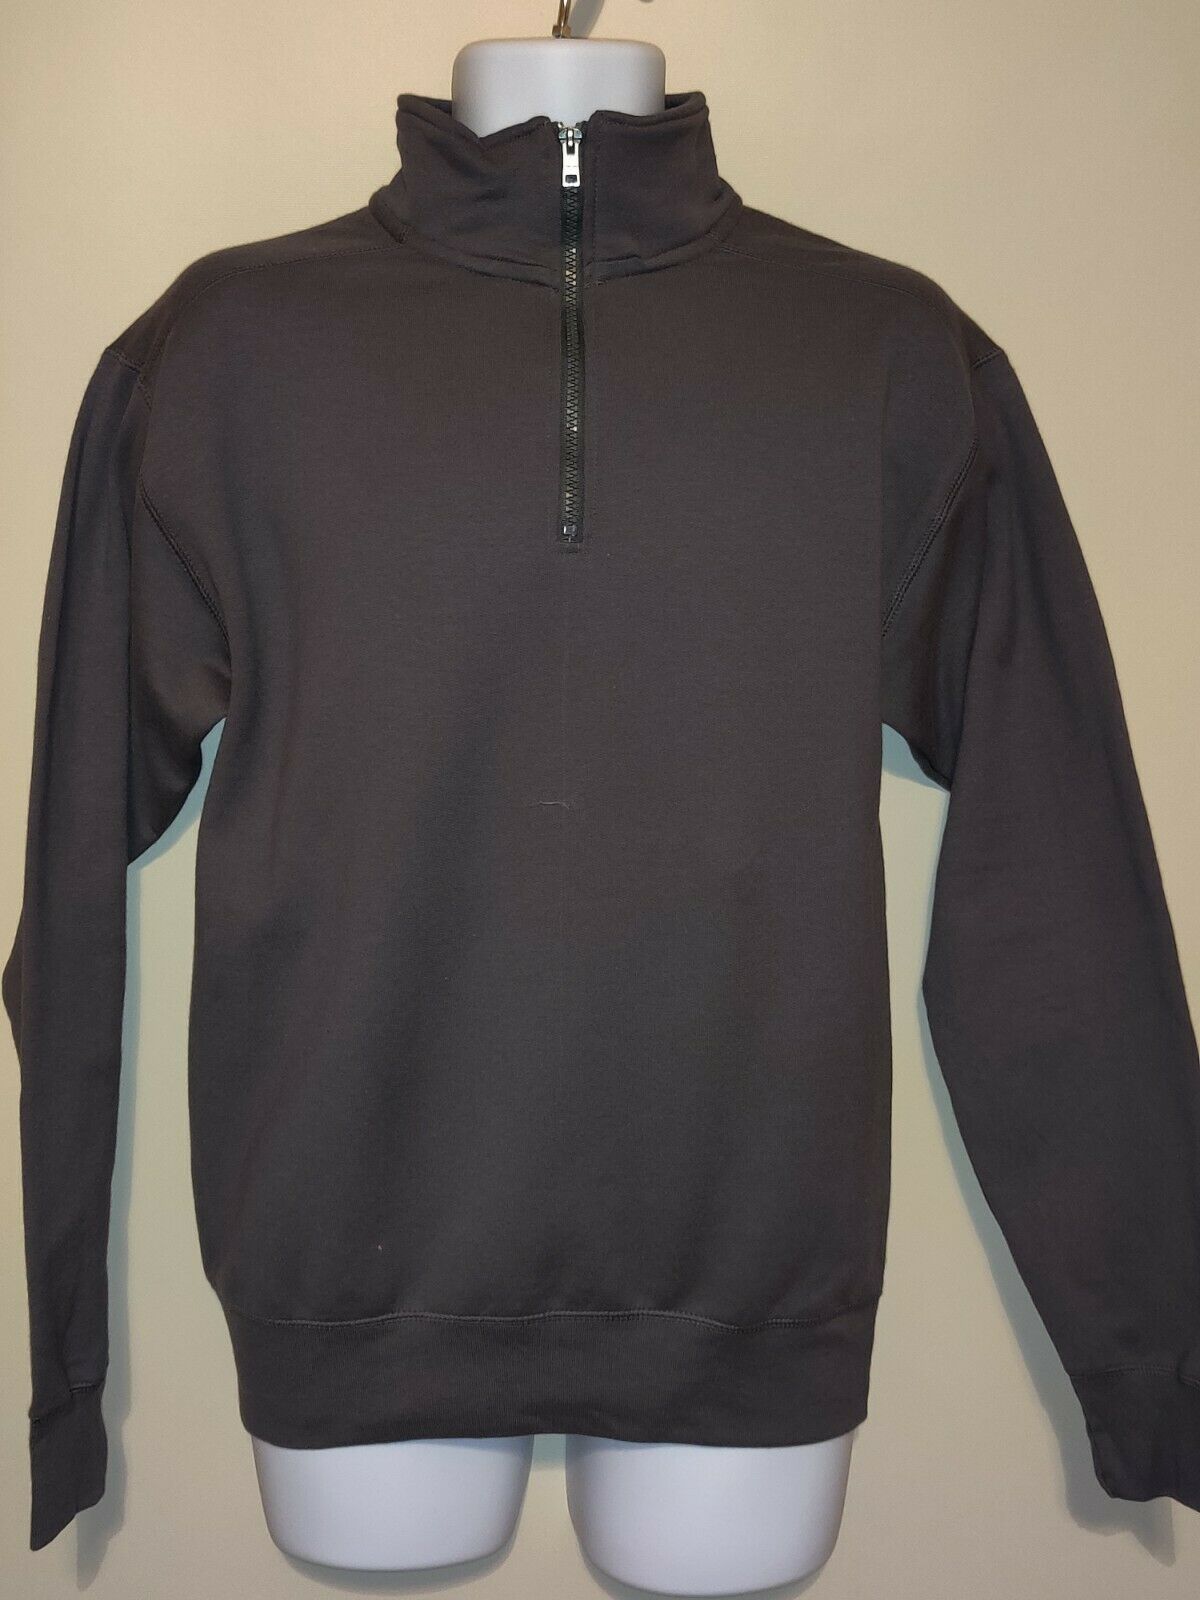 Hanes Men's Nano Quarter-Zip Fleece Jacket - Grey - $15.00